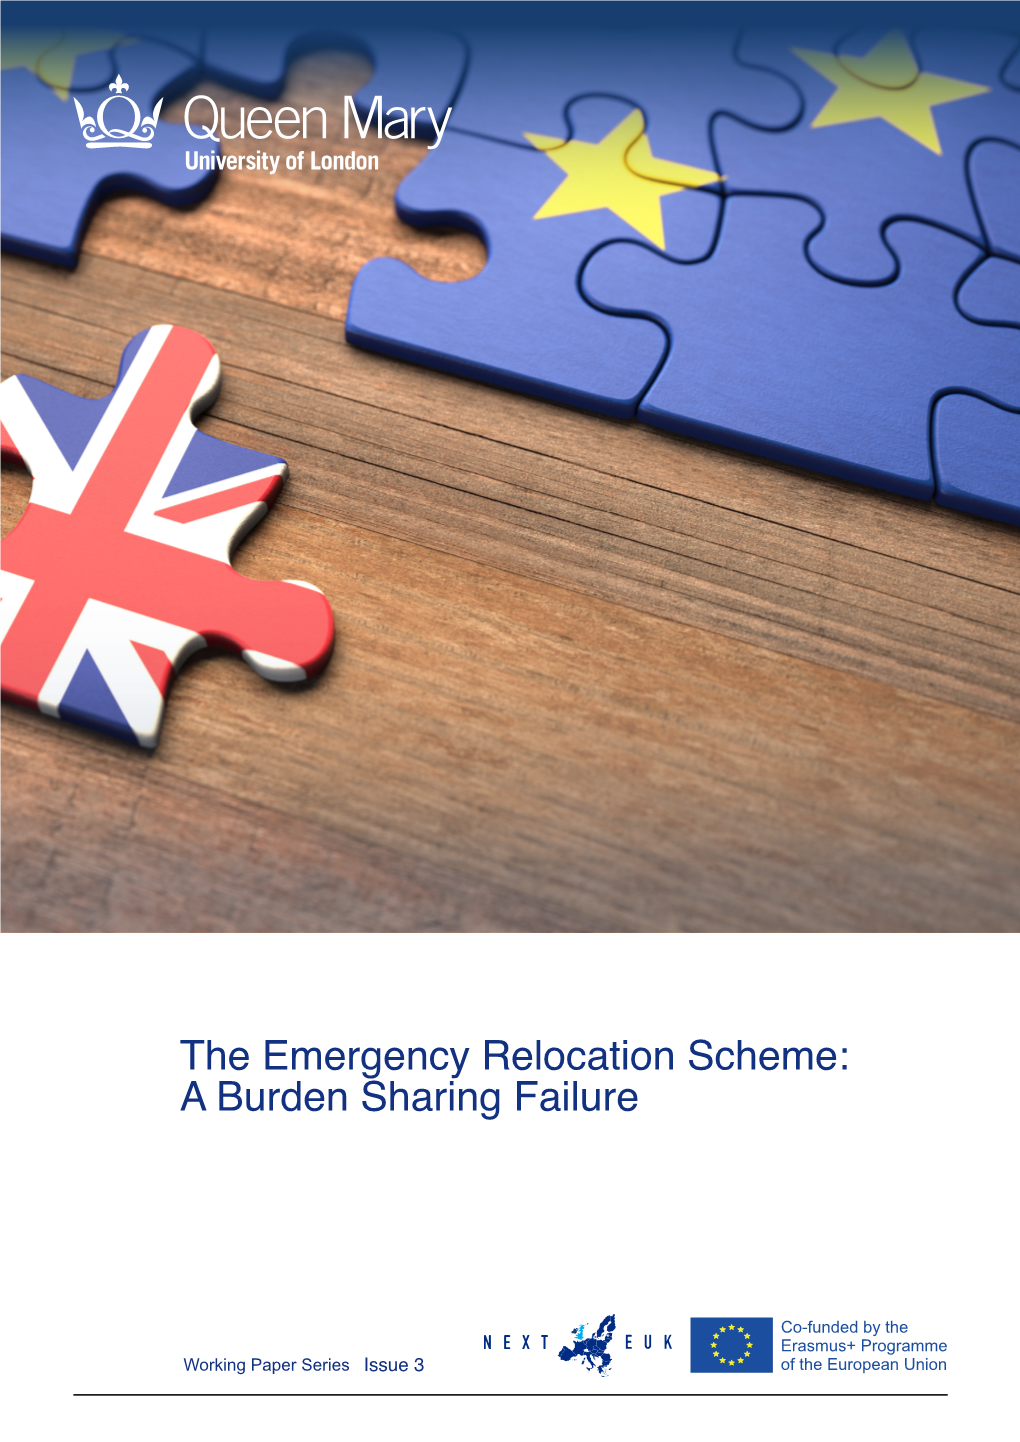 The Emergency Relocation Scheme: a Burden Sharing Failure